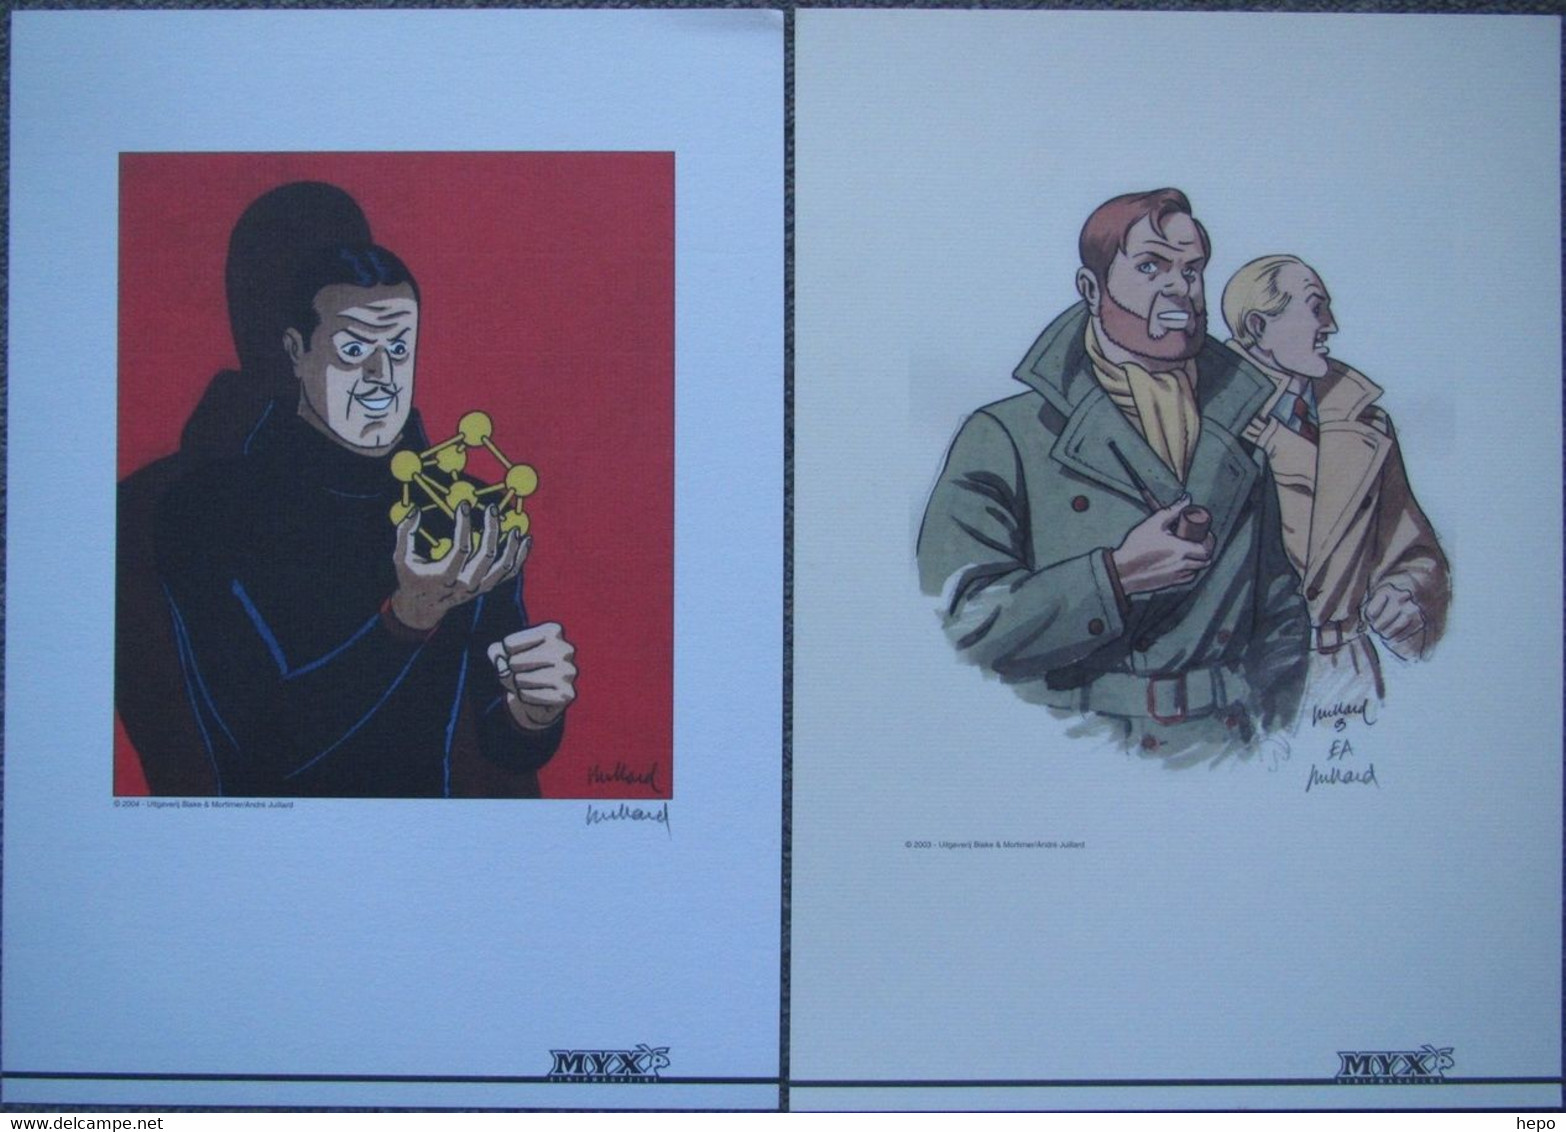 Juillard - Blake Et Mortimer - 2003 Et 2004 - DUO Ex Libris Signé MYX - Sarcophages ? - Illustrators J - L